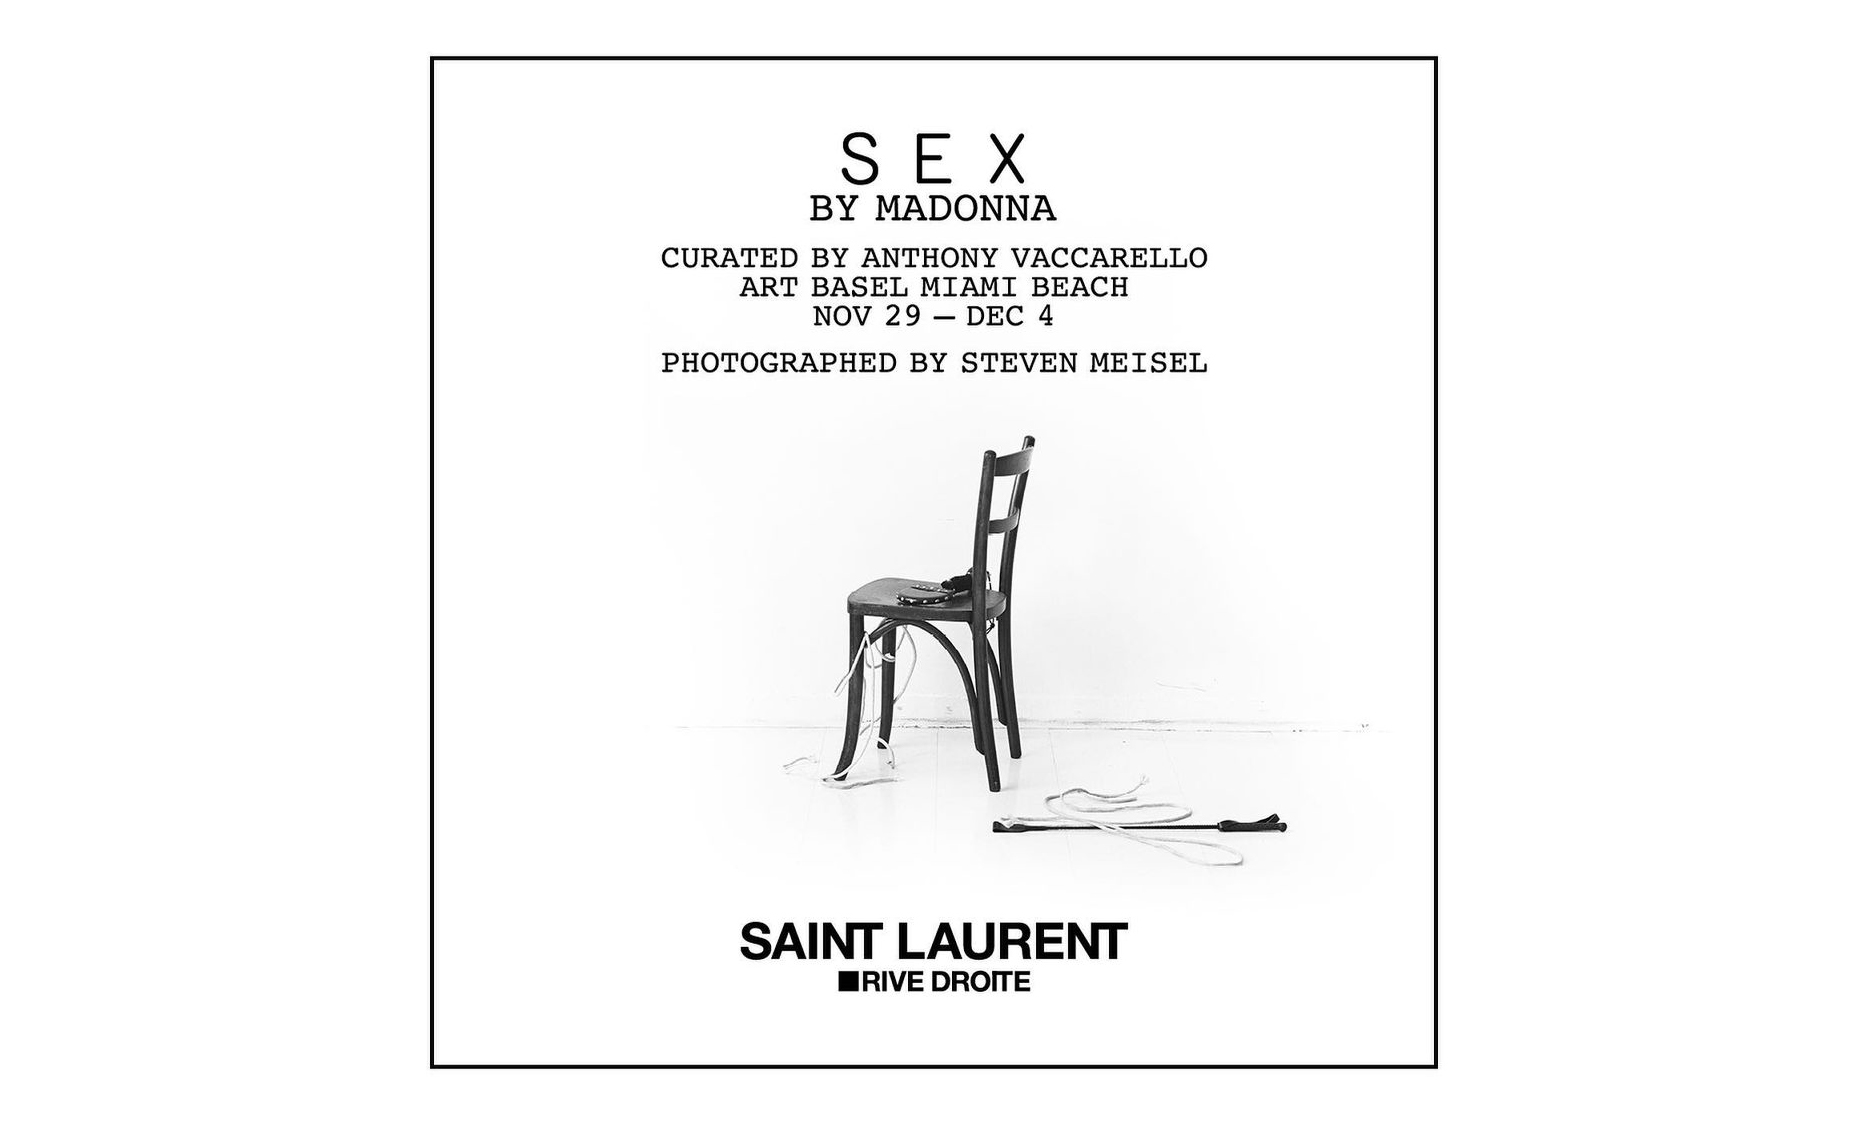 Saint Laurent 将在 Art Basel 展览推出《SEX BY MADONNA》再版书籍